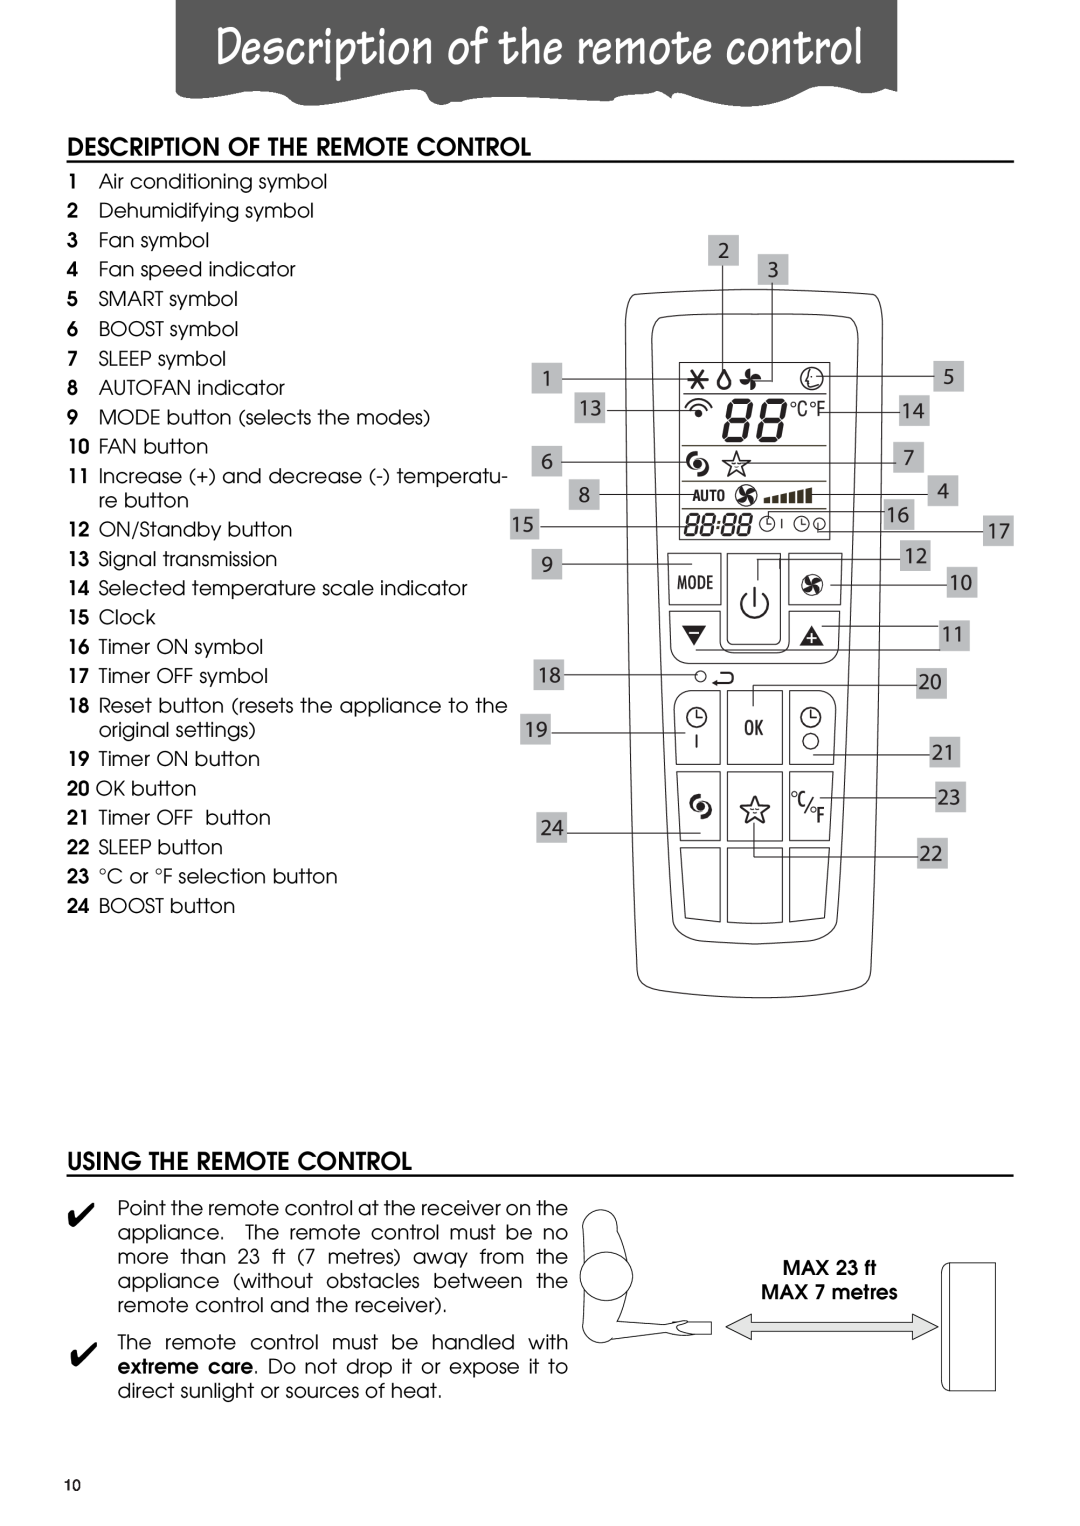 DeLonghi PACA110-A120E Description of the remote control, Description Of The Remote Control, Using The Remote Control 